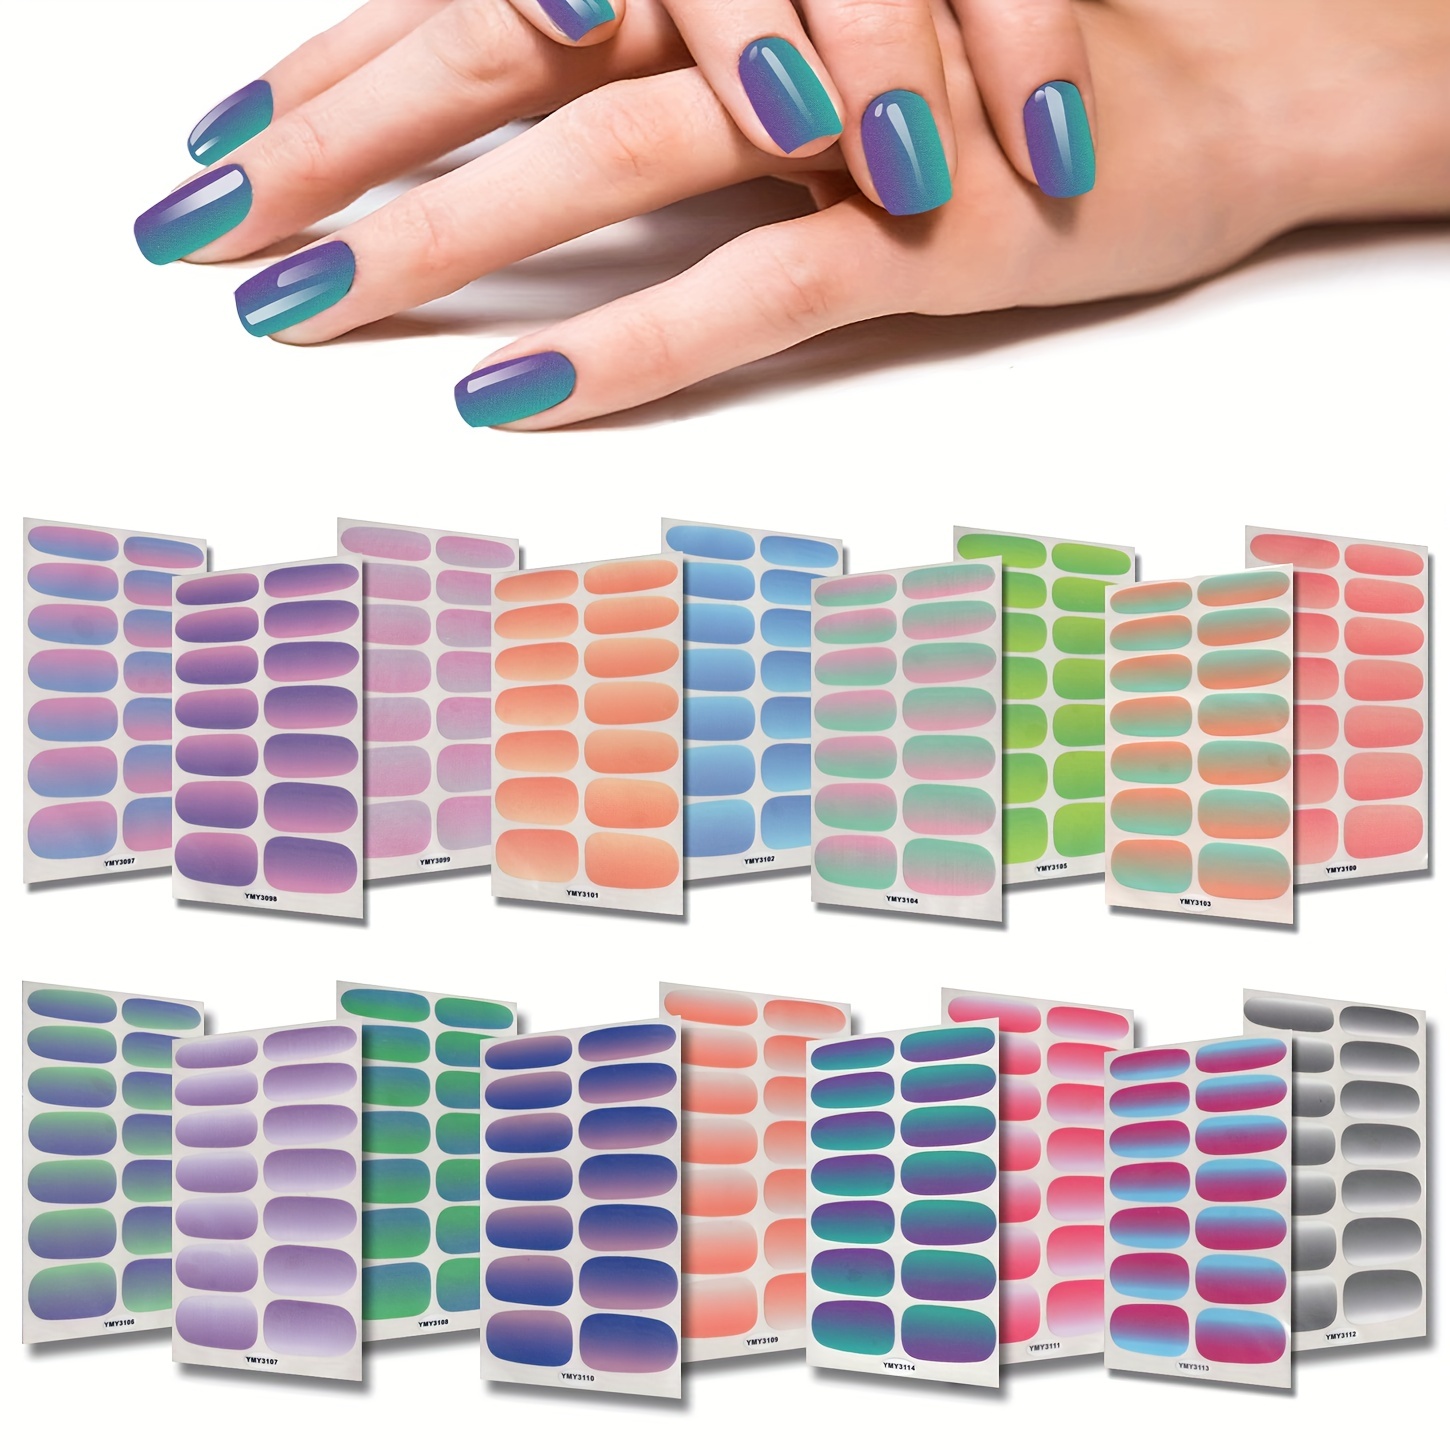 8 hojas de envoltura completa pegatinas de esmalte de uñas con degradado 3D  Color sólido calcomanías autoadhesivas para uñas DIY Art Nail Stickers